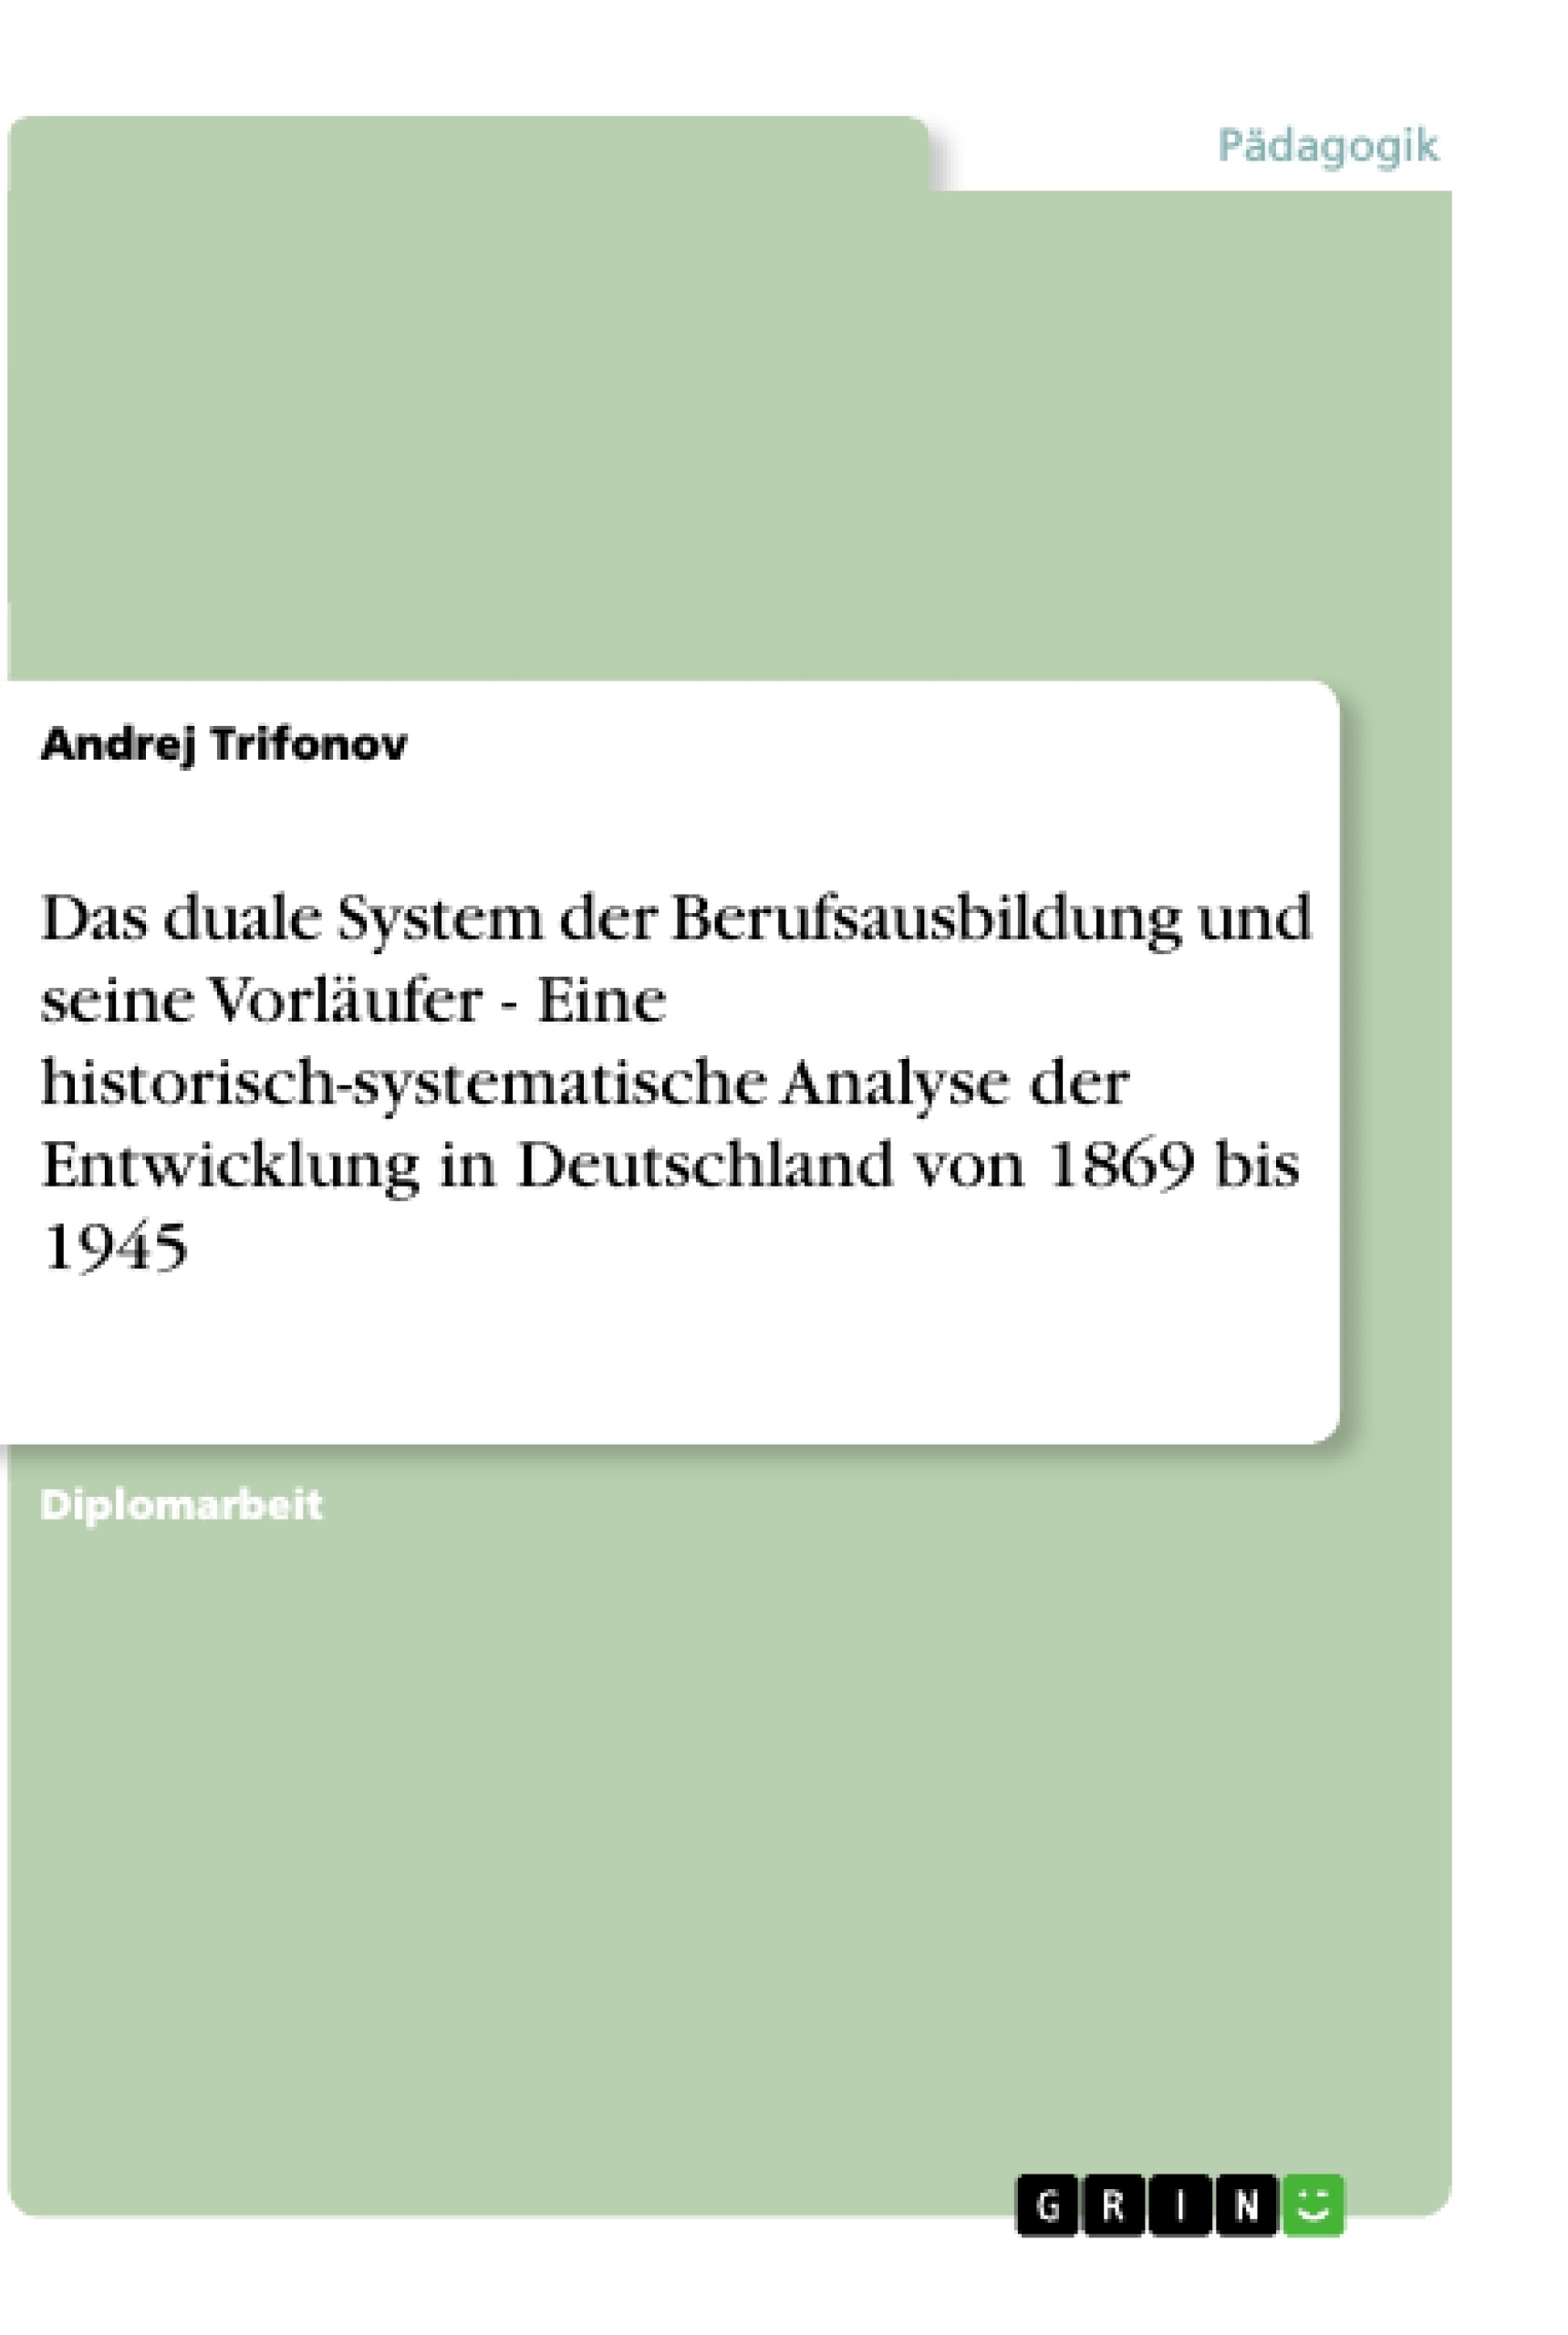 Titre: Das duale System der Berufsausbildung und seine Vorläufer - Eine historisch-systematische Analyse der Entwicklung in Deutschland von 1869 bis 1945